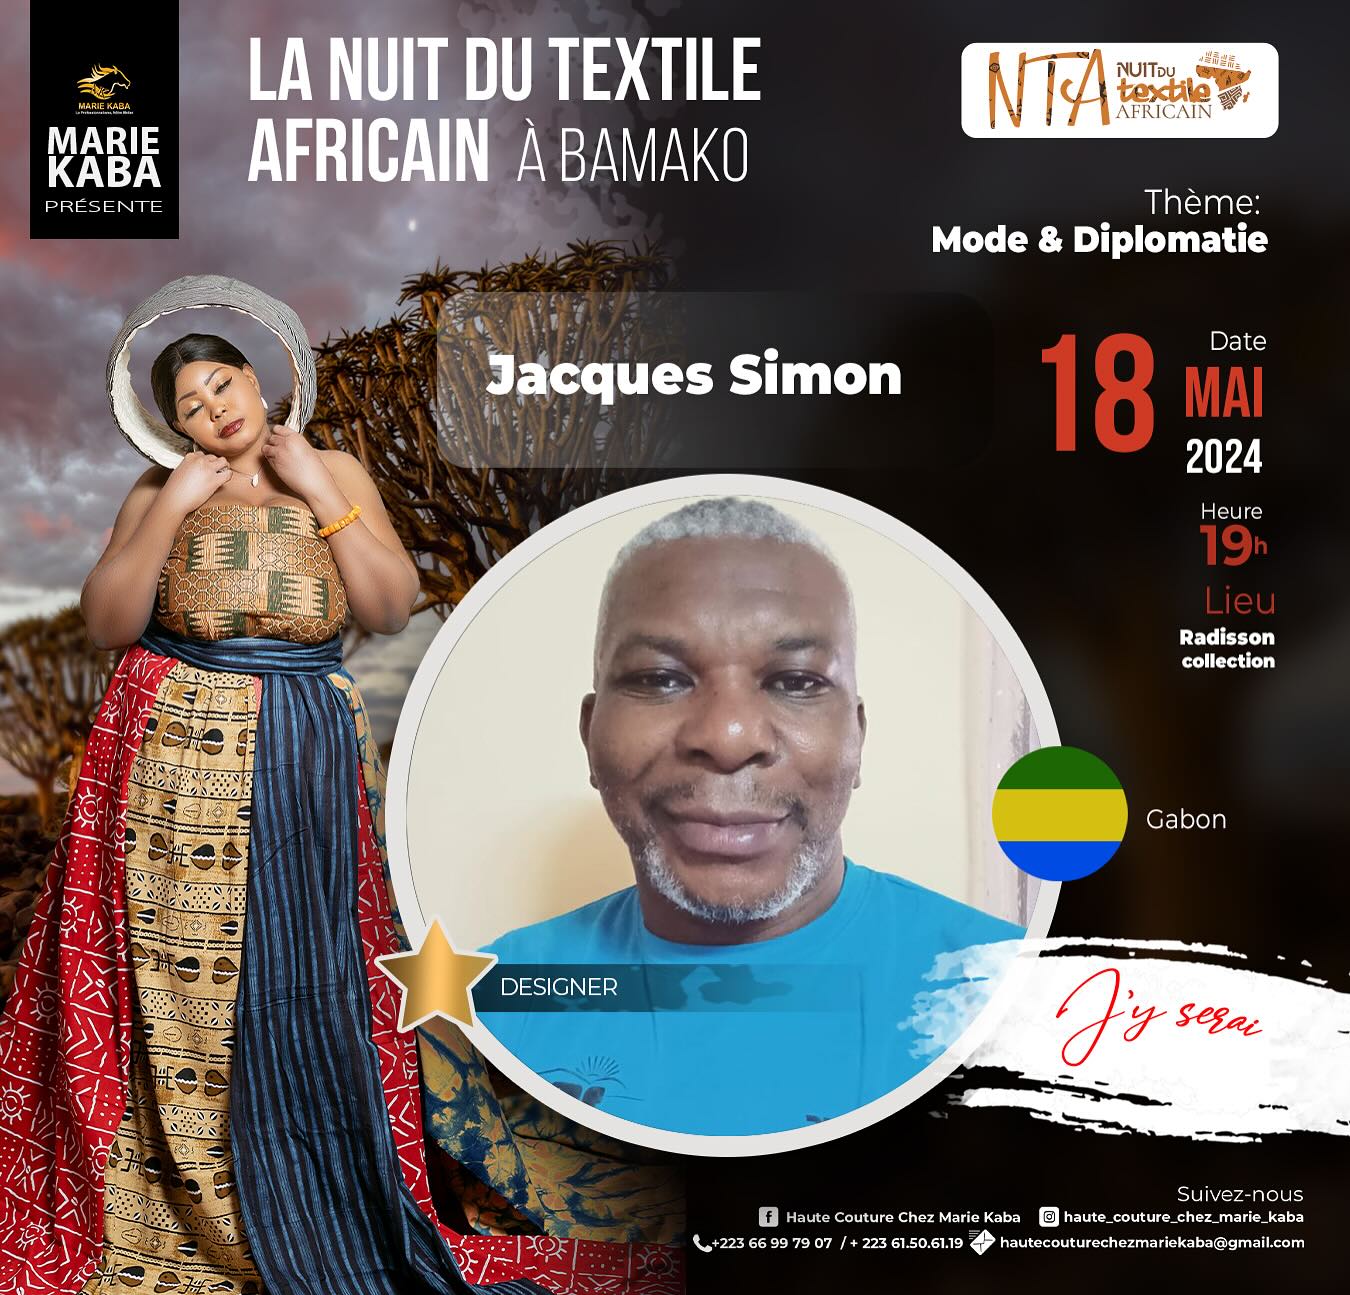 LA NUIT DU TEXTILE AFRICAIN A BAMAKO presents Jacques SIMON from  Gabon